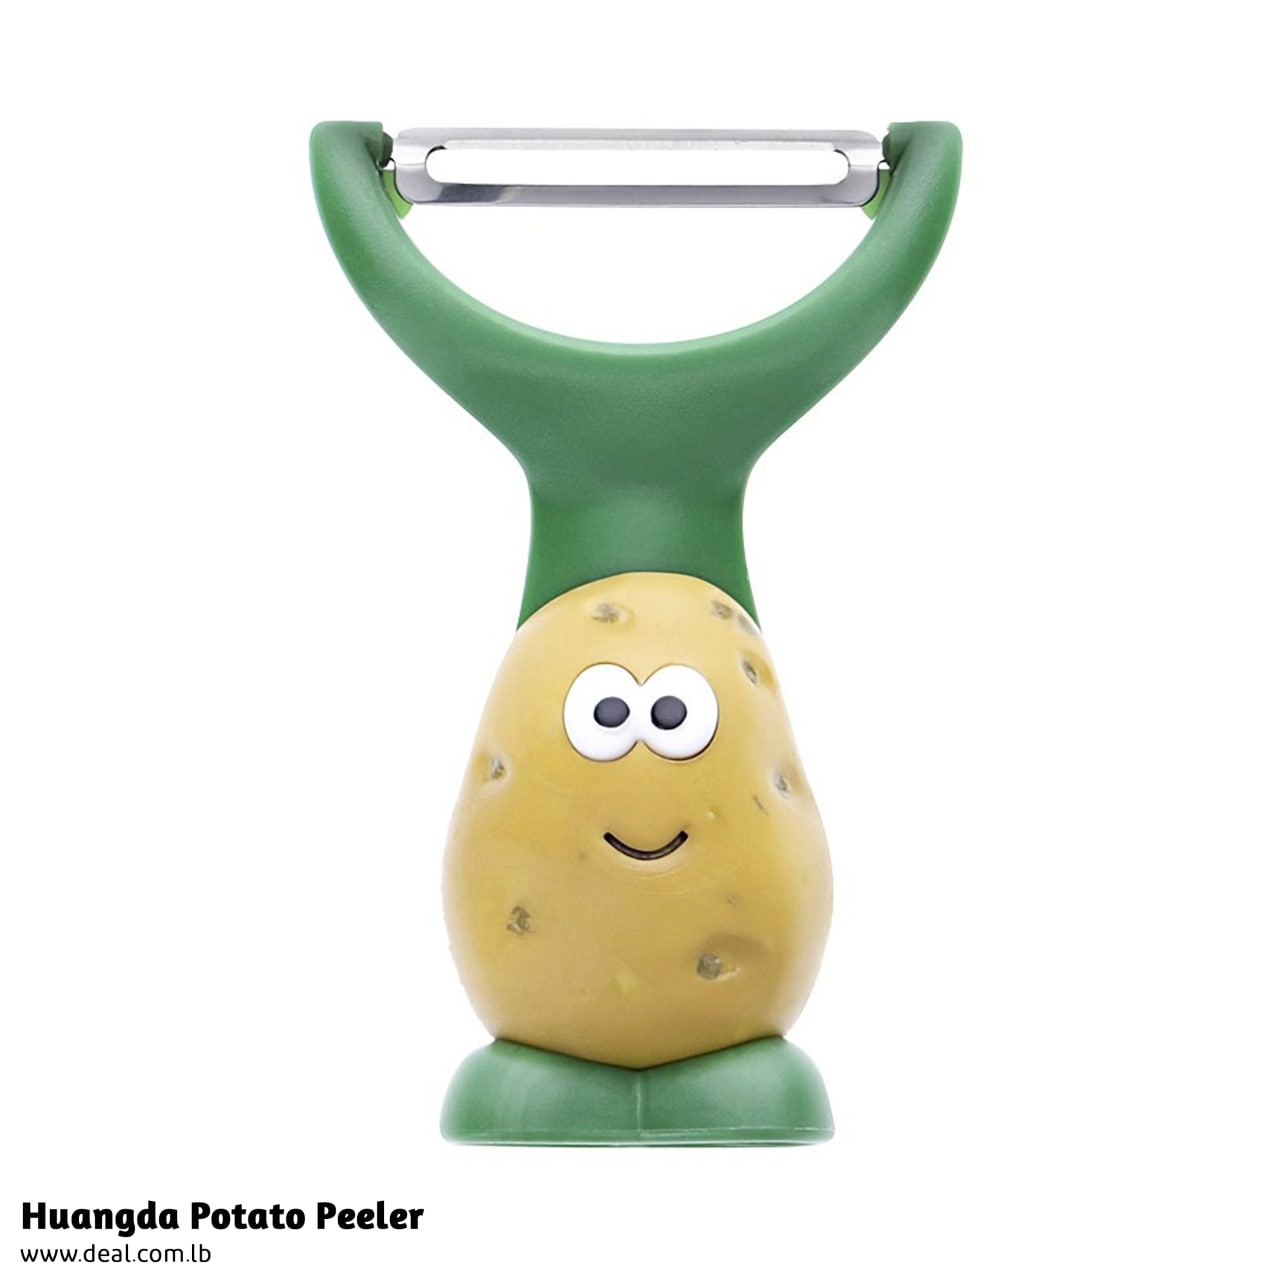 Huangda Potato Peeler